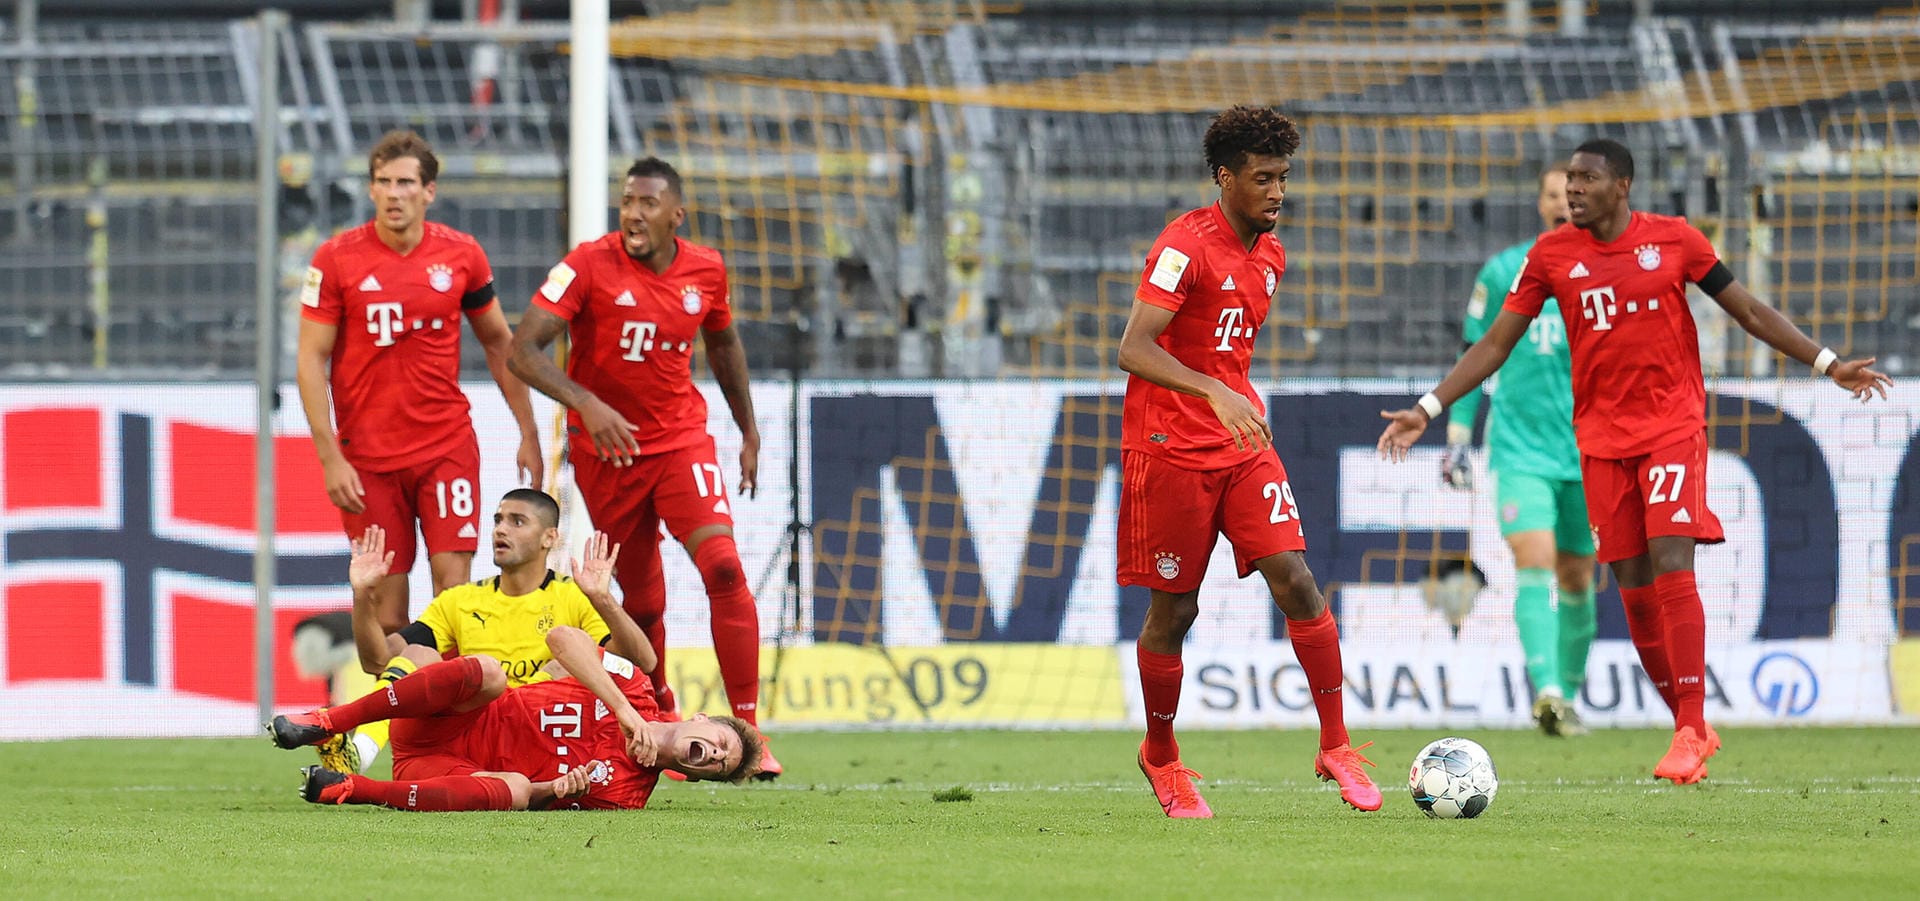 Der FC Bayern gewinnt in Dortmund mit 1:0. Den Treffer des Tages erzielt Joshua Kimmich. t-online.de hat die Profis des Rekordmeisters einzeln bewertet. Hier der Überblick.